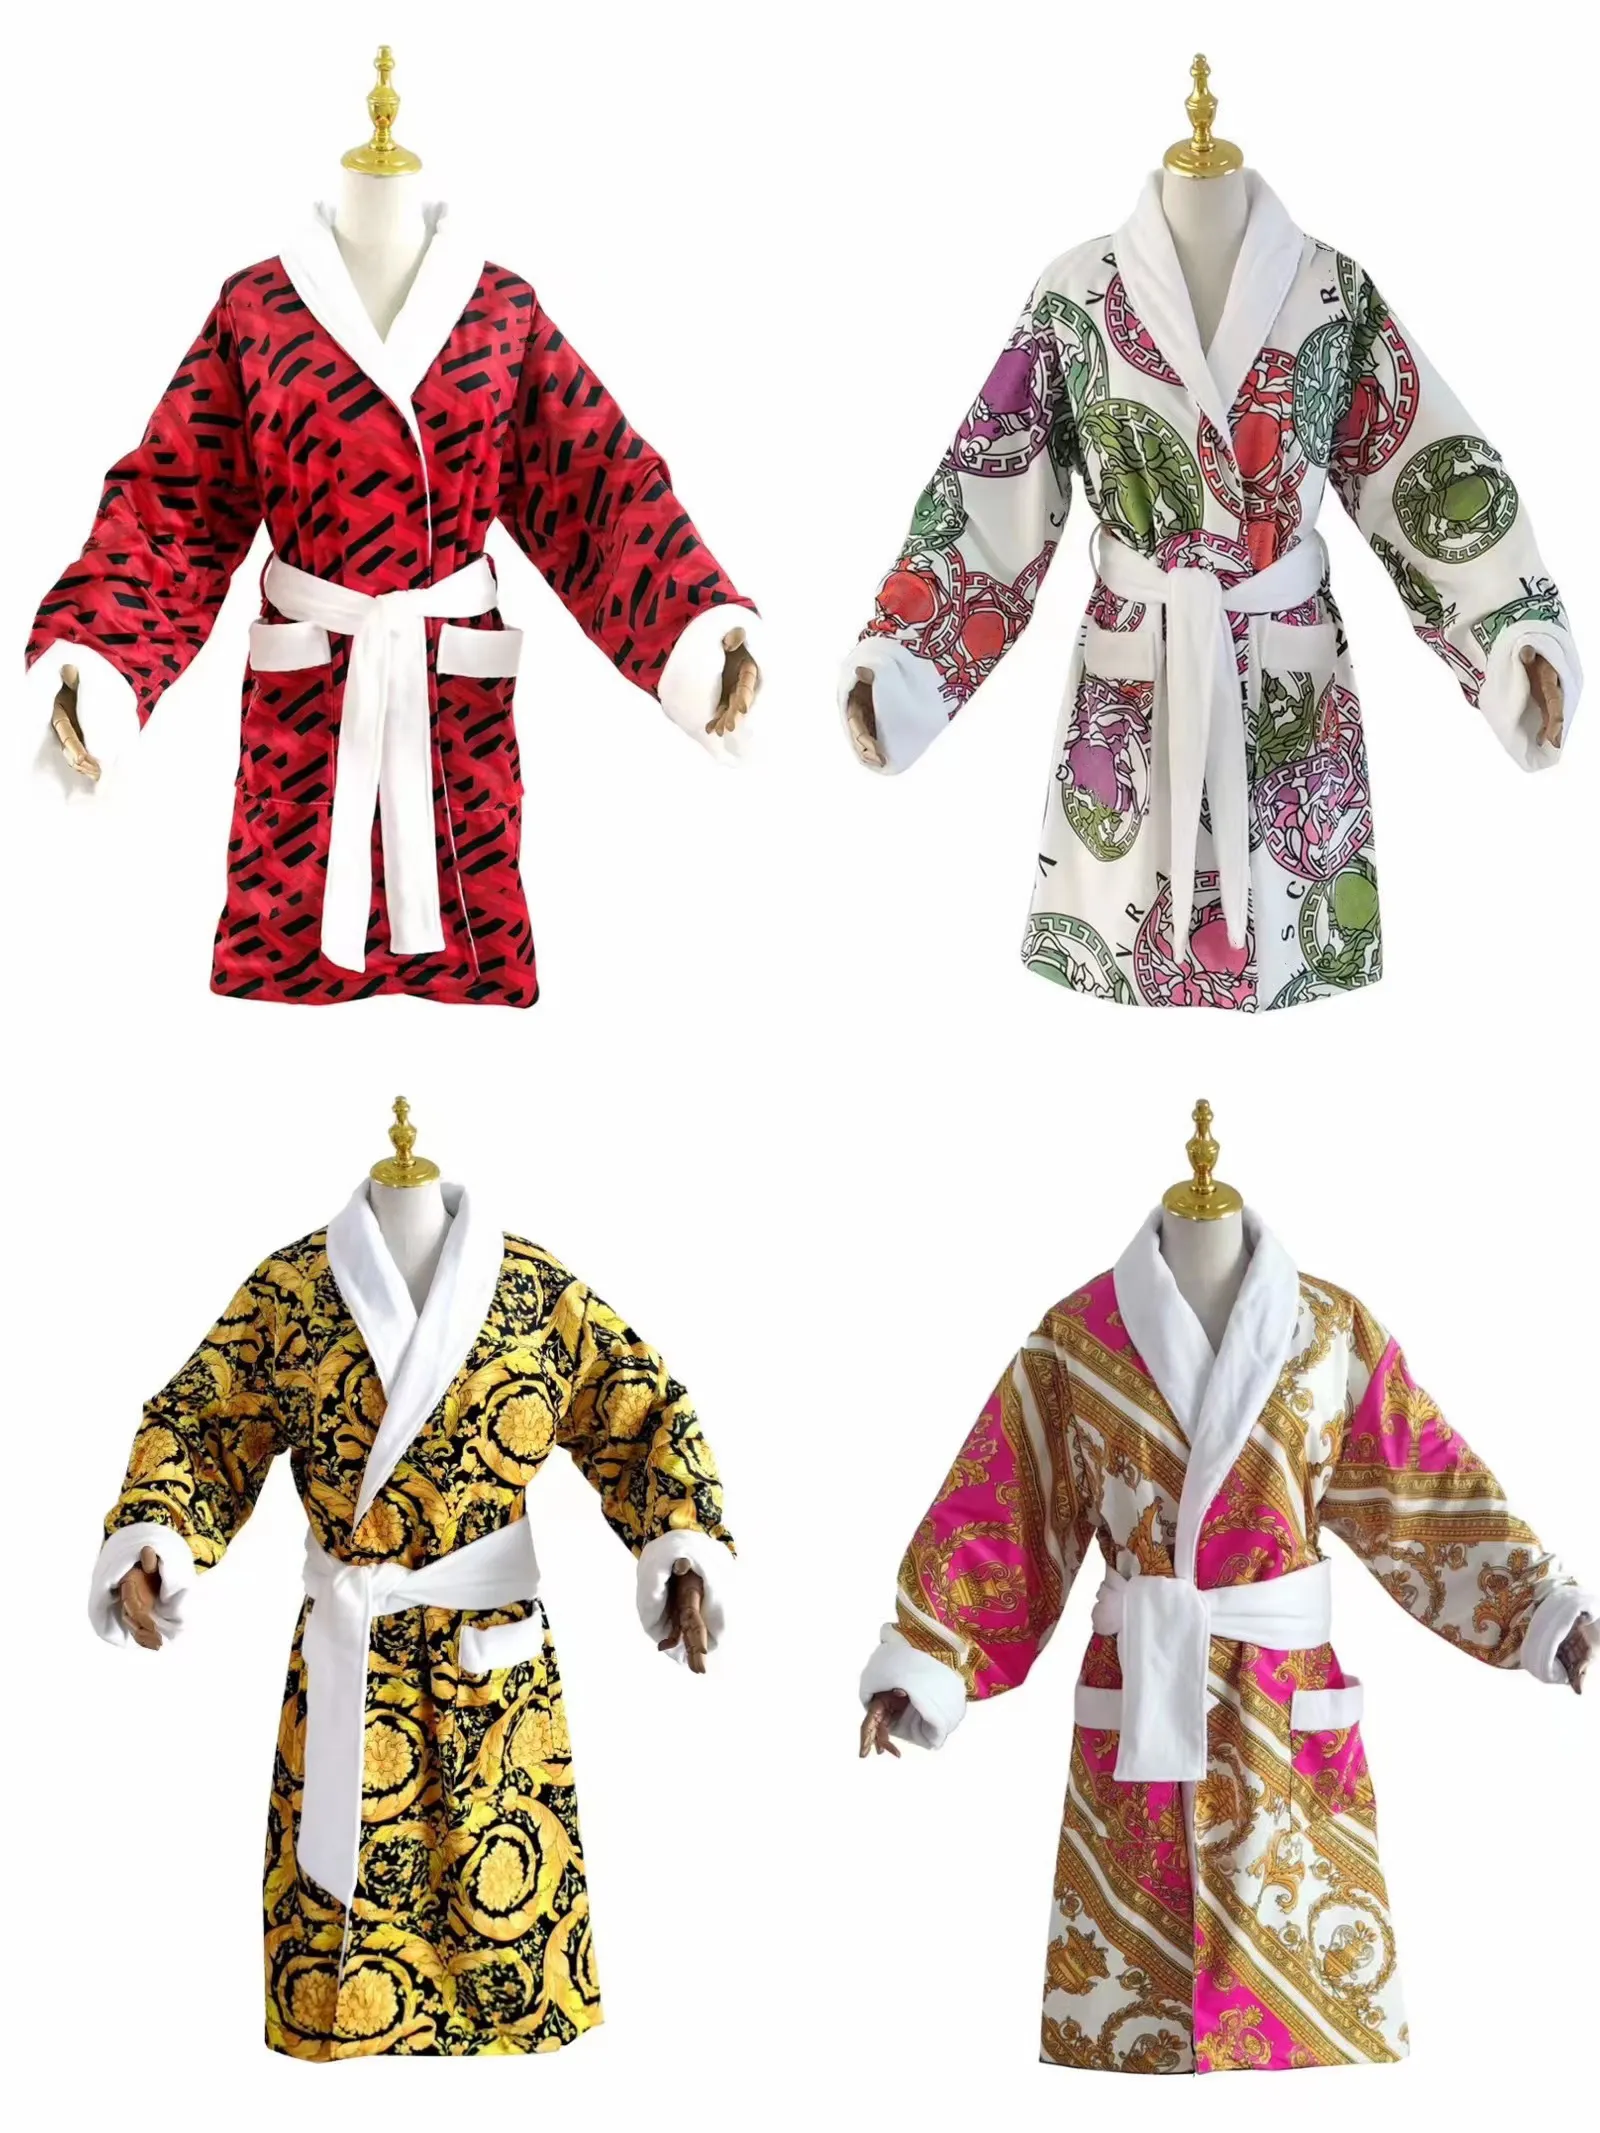 Plus G Ropa interior G CC Mujer TB Tamaño CD FF Mujer Hombre Albornoz de algodón clásico de lujo para hombres y mujeres Ropa de dormir de marca kimono Batas de baño cálidas Ropa para el hogar Unise